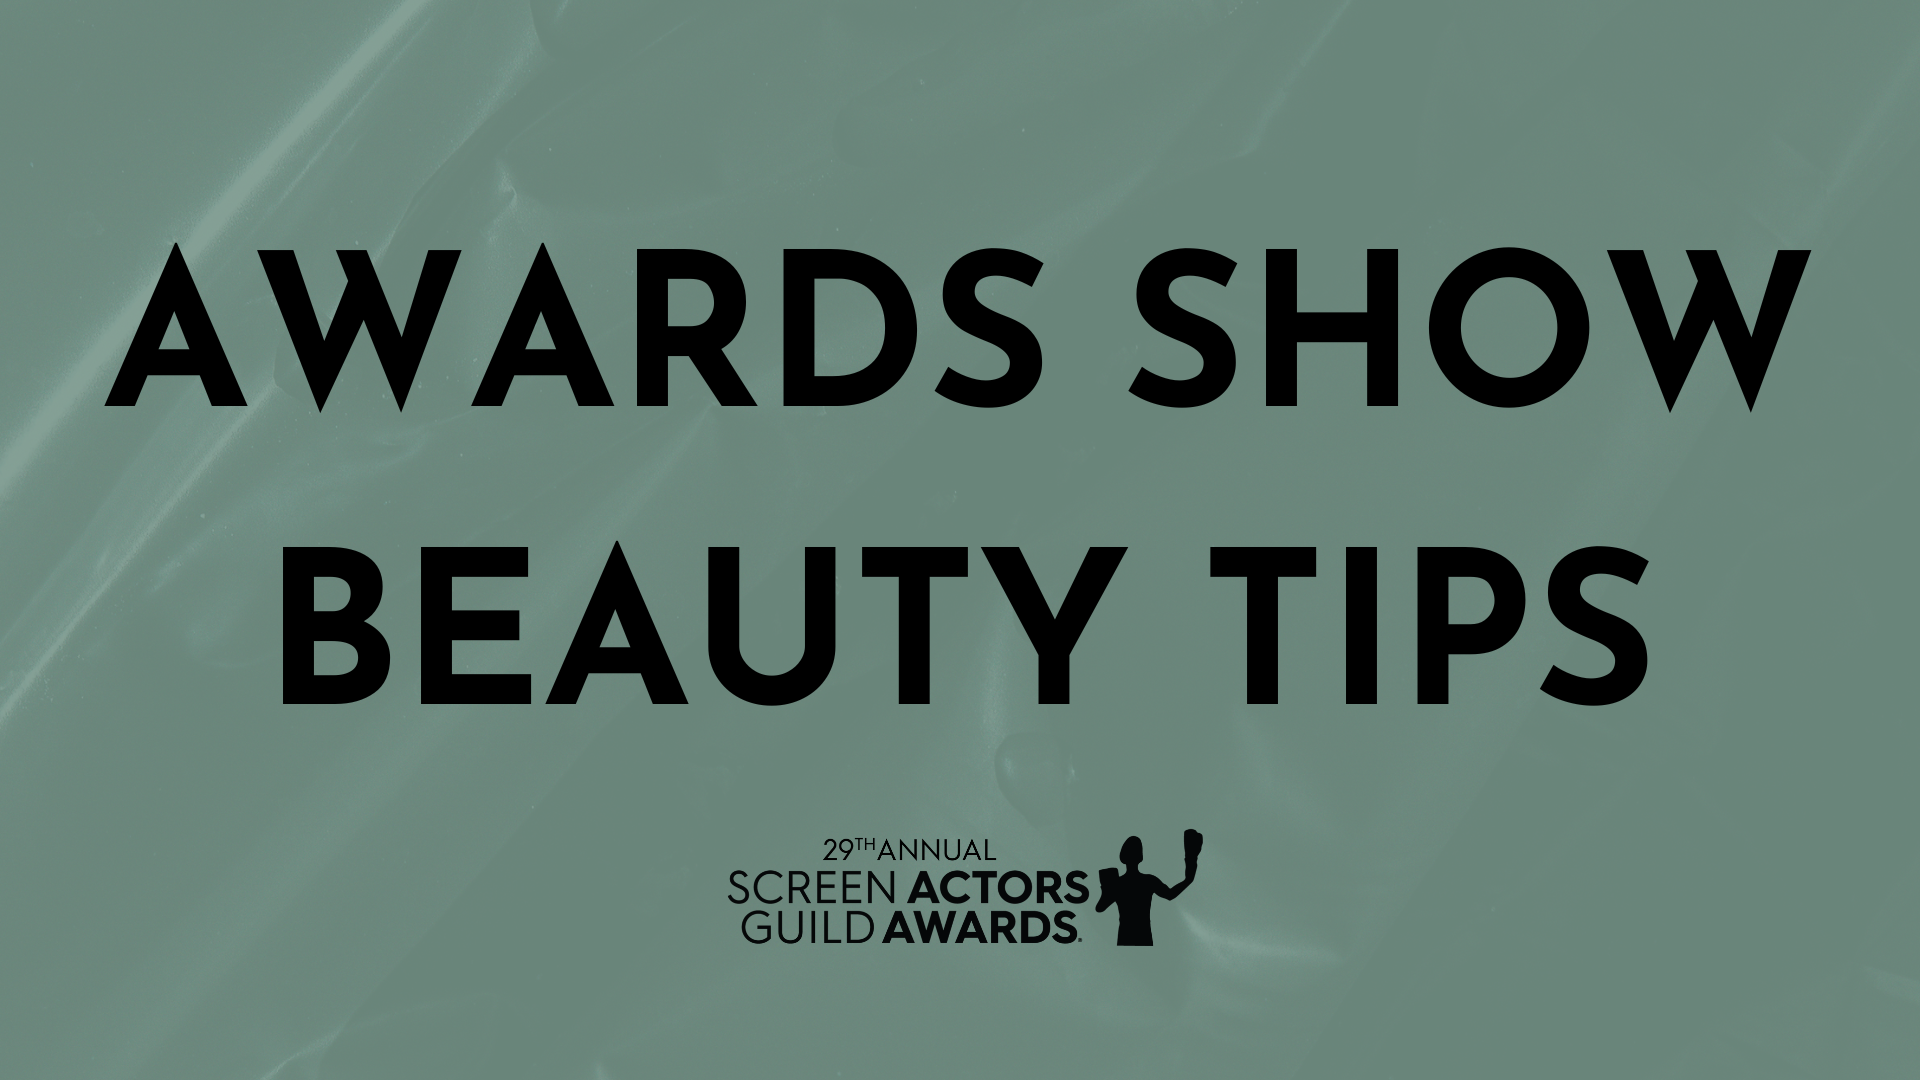 Awards Show Beauty Tips